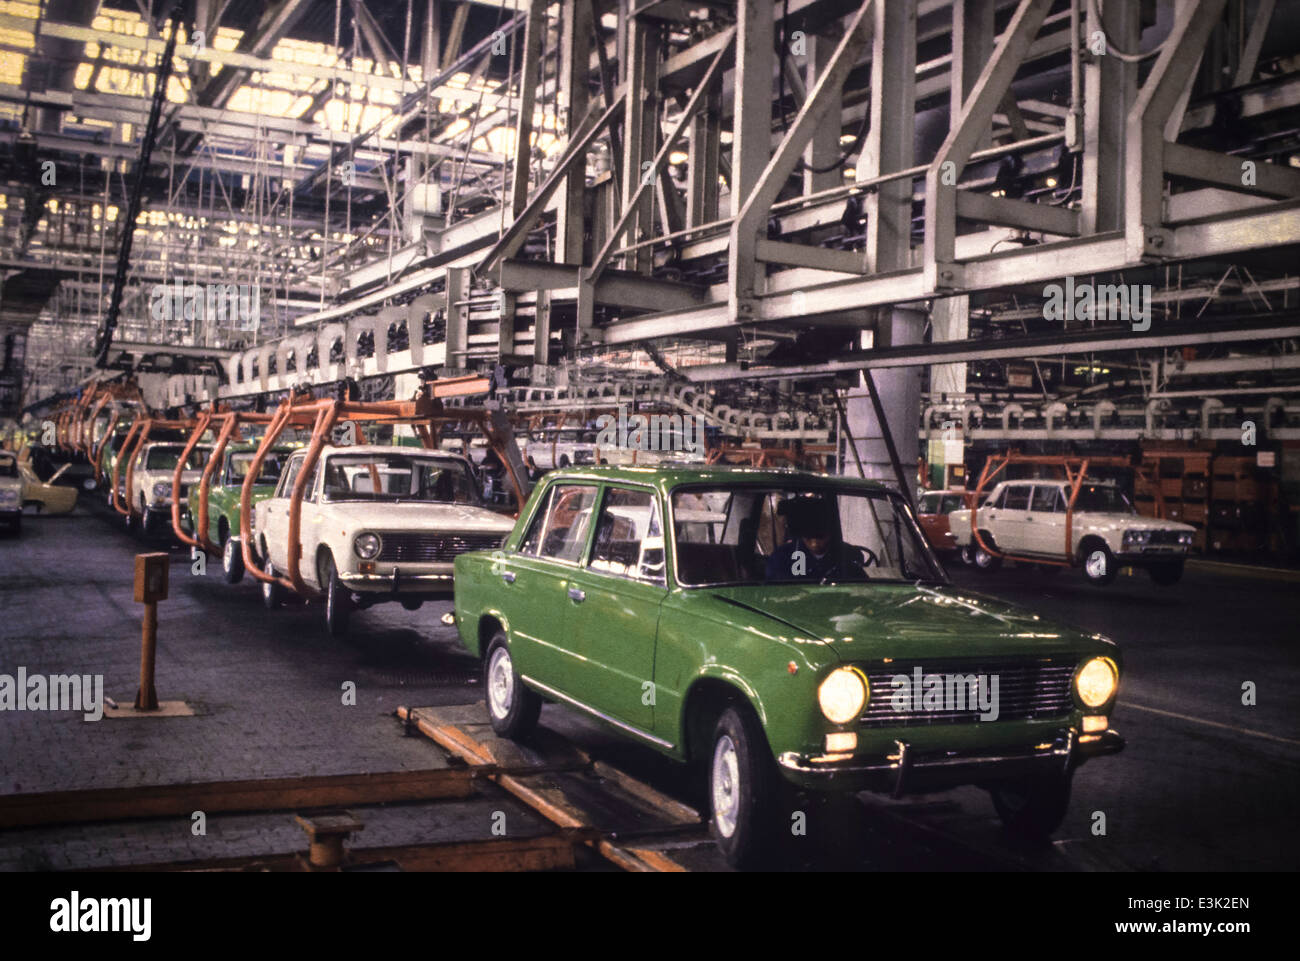 ussr,togliatti,vaz car industry,1983 Stock Photo